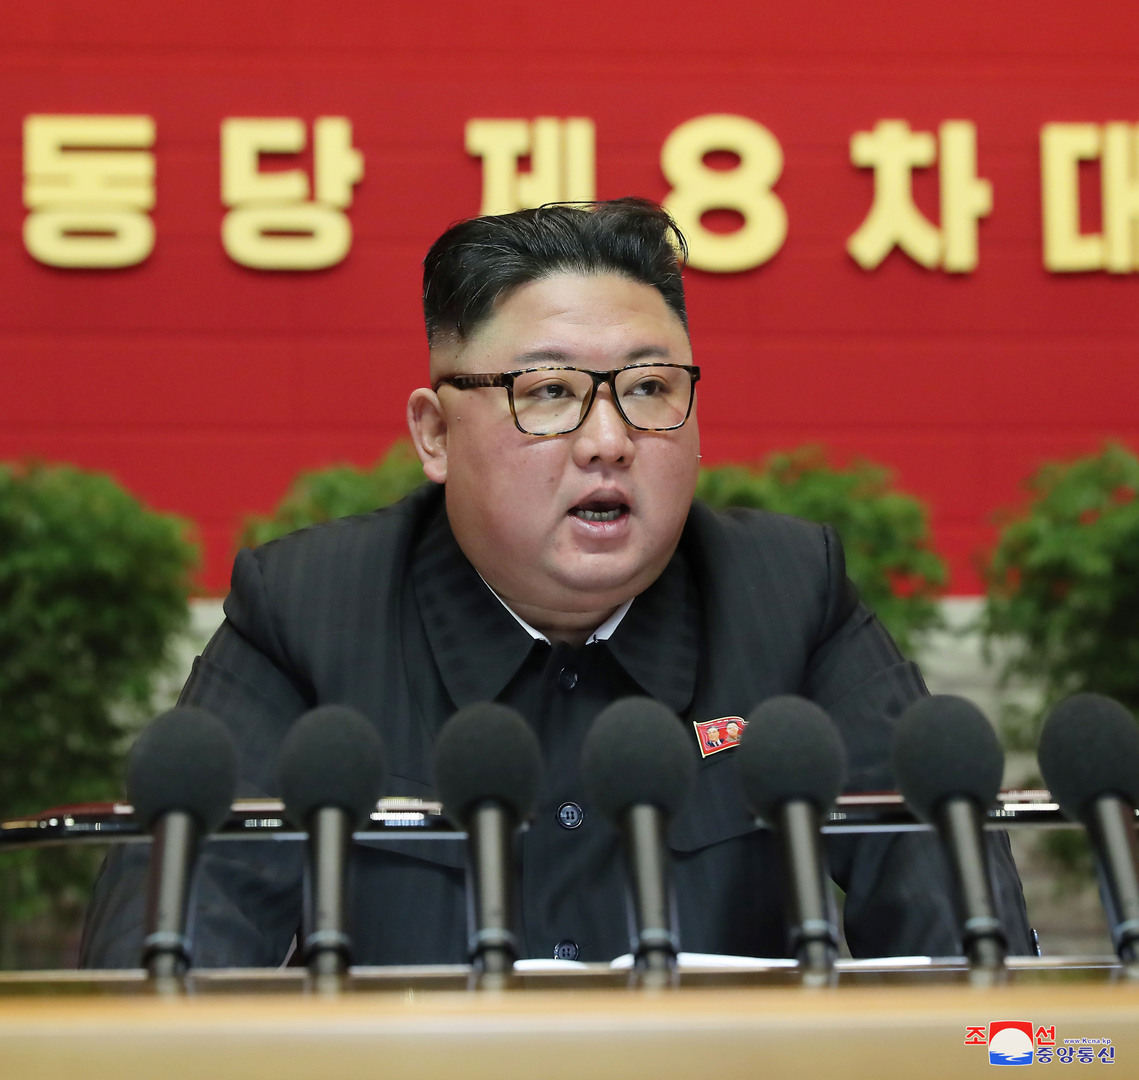 كيم جونغ أون: كوريا الجنوبية العدو الأكثر ضررا